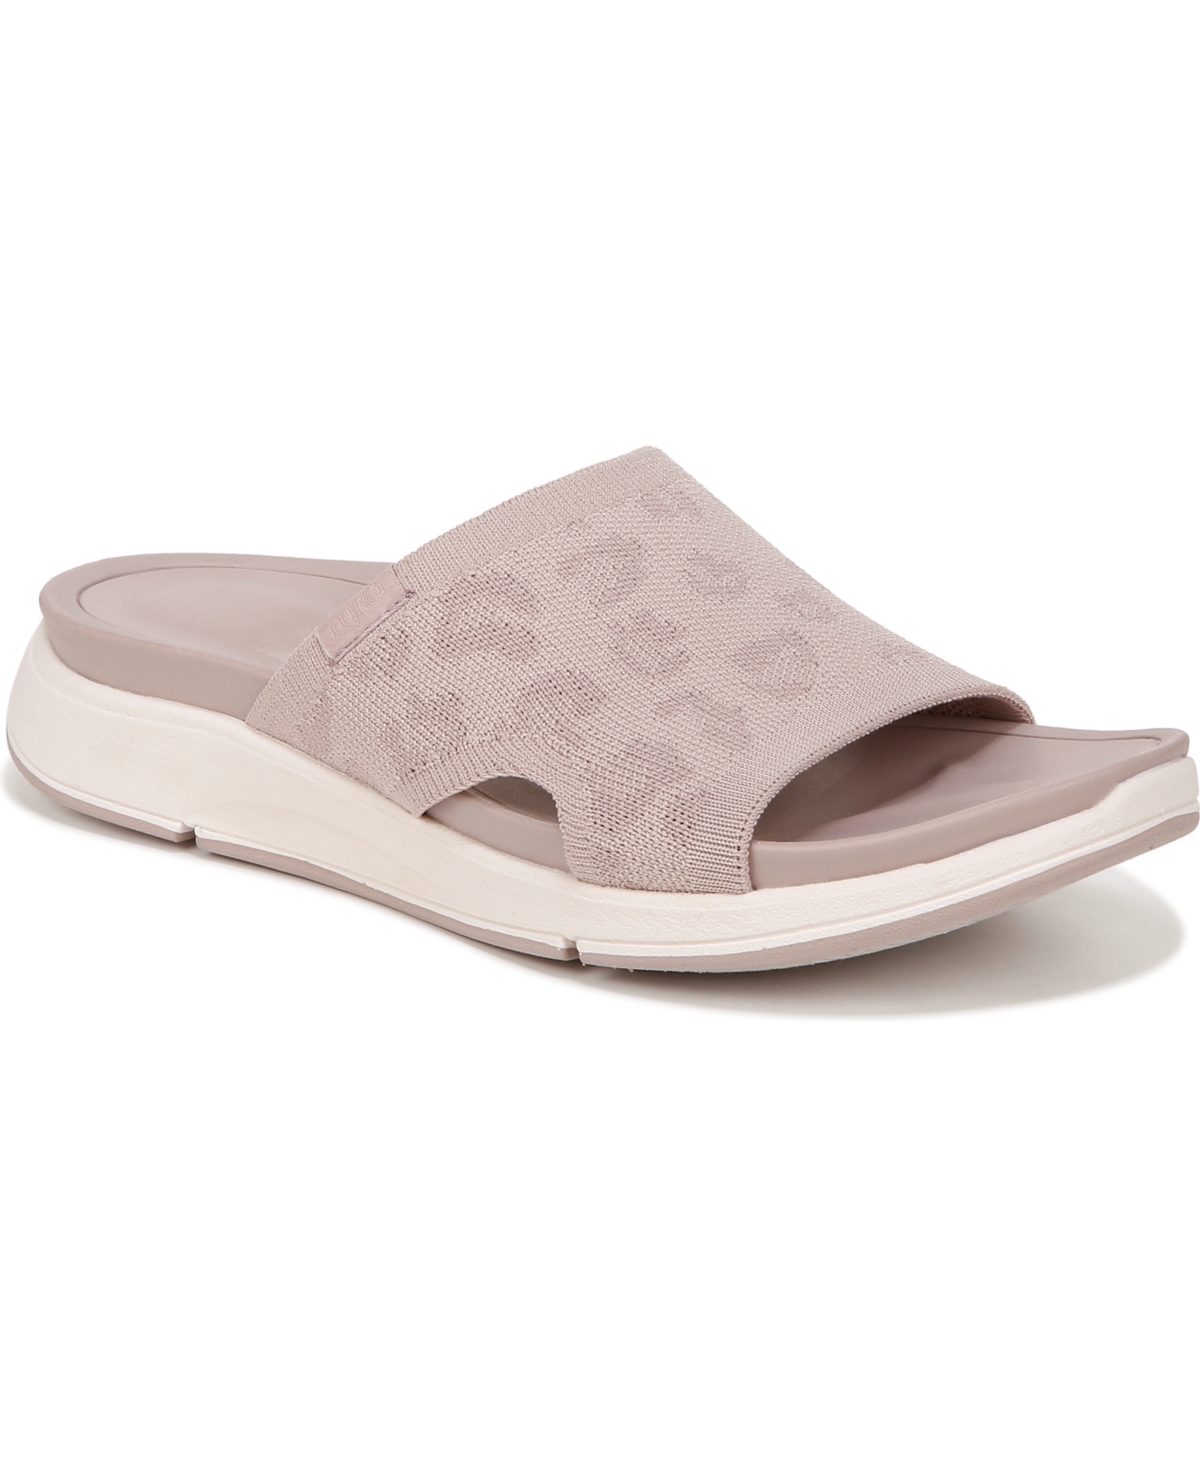 Women's Triumph Slide Sandals - Violet Taupe Fabric